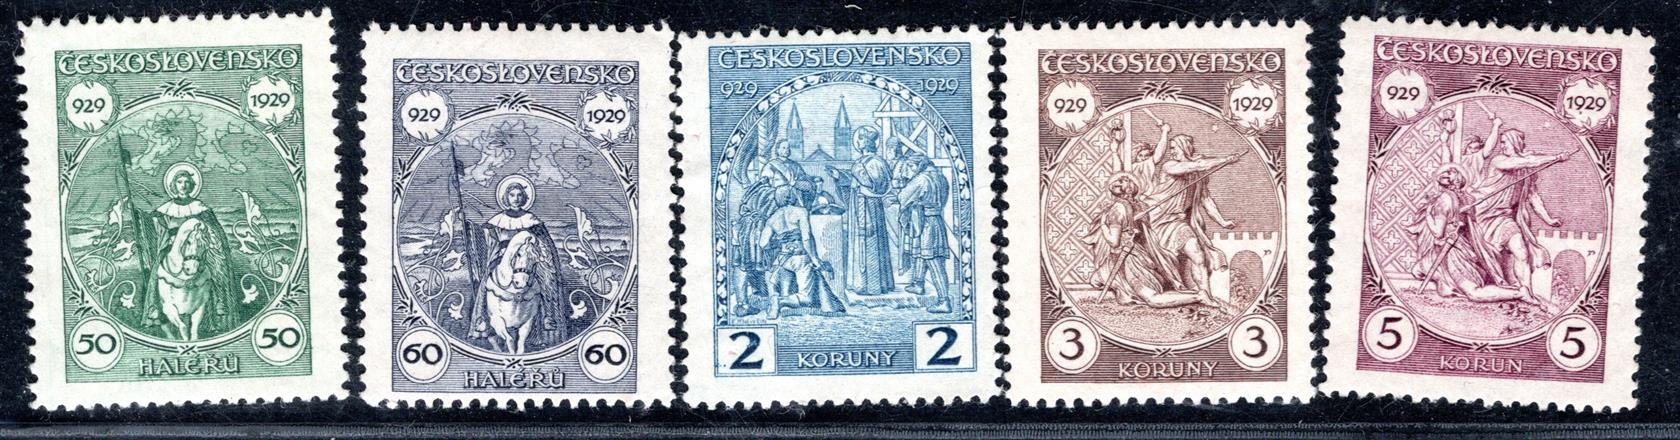 243 - 7, sv. Václav, kompletní svěží řada